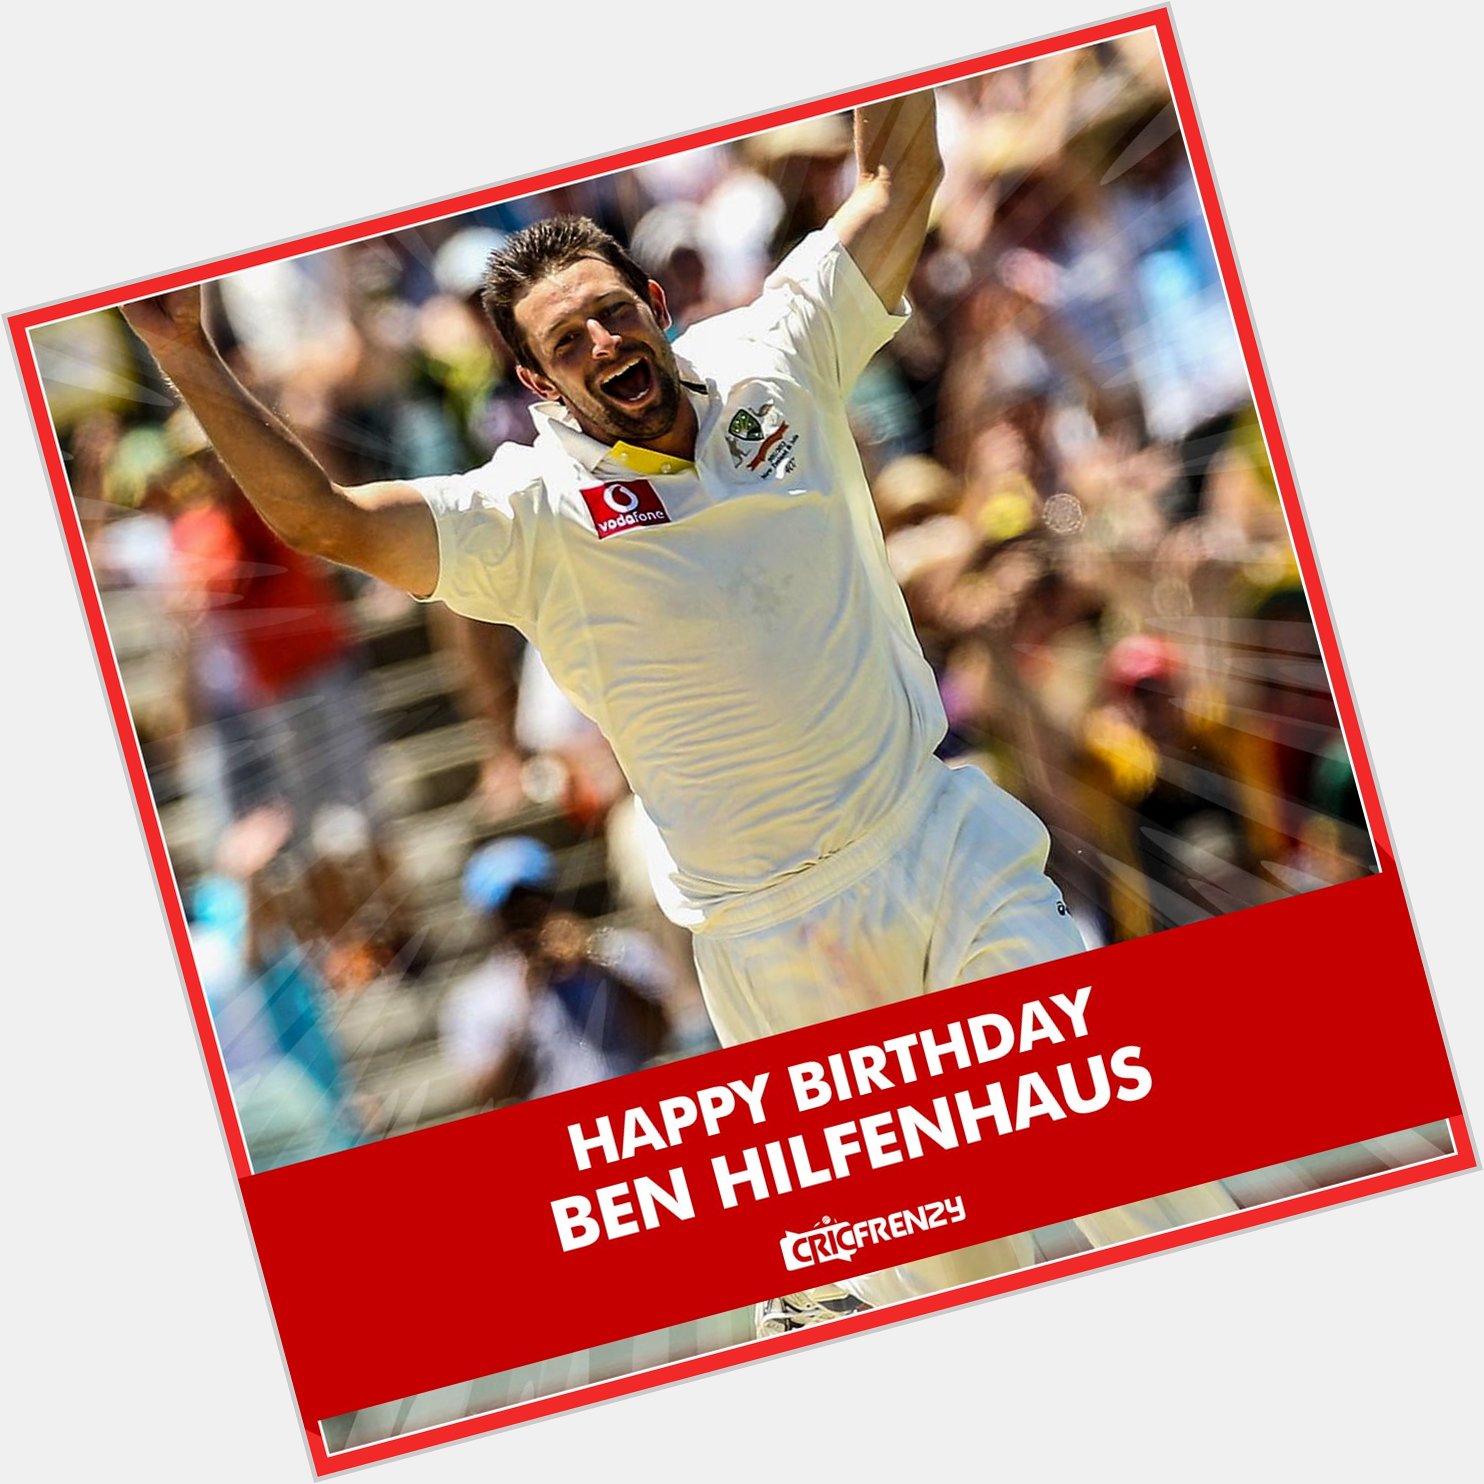 Happy birthday, Ben Hilfenhaus  